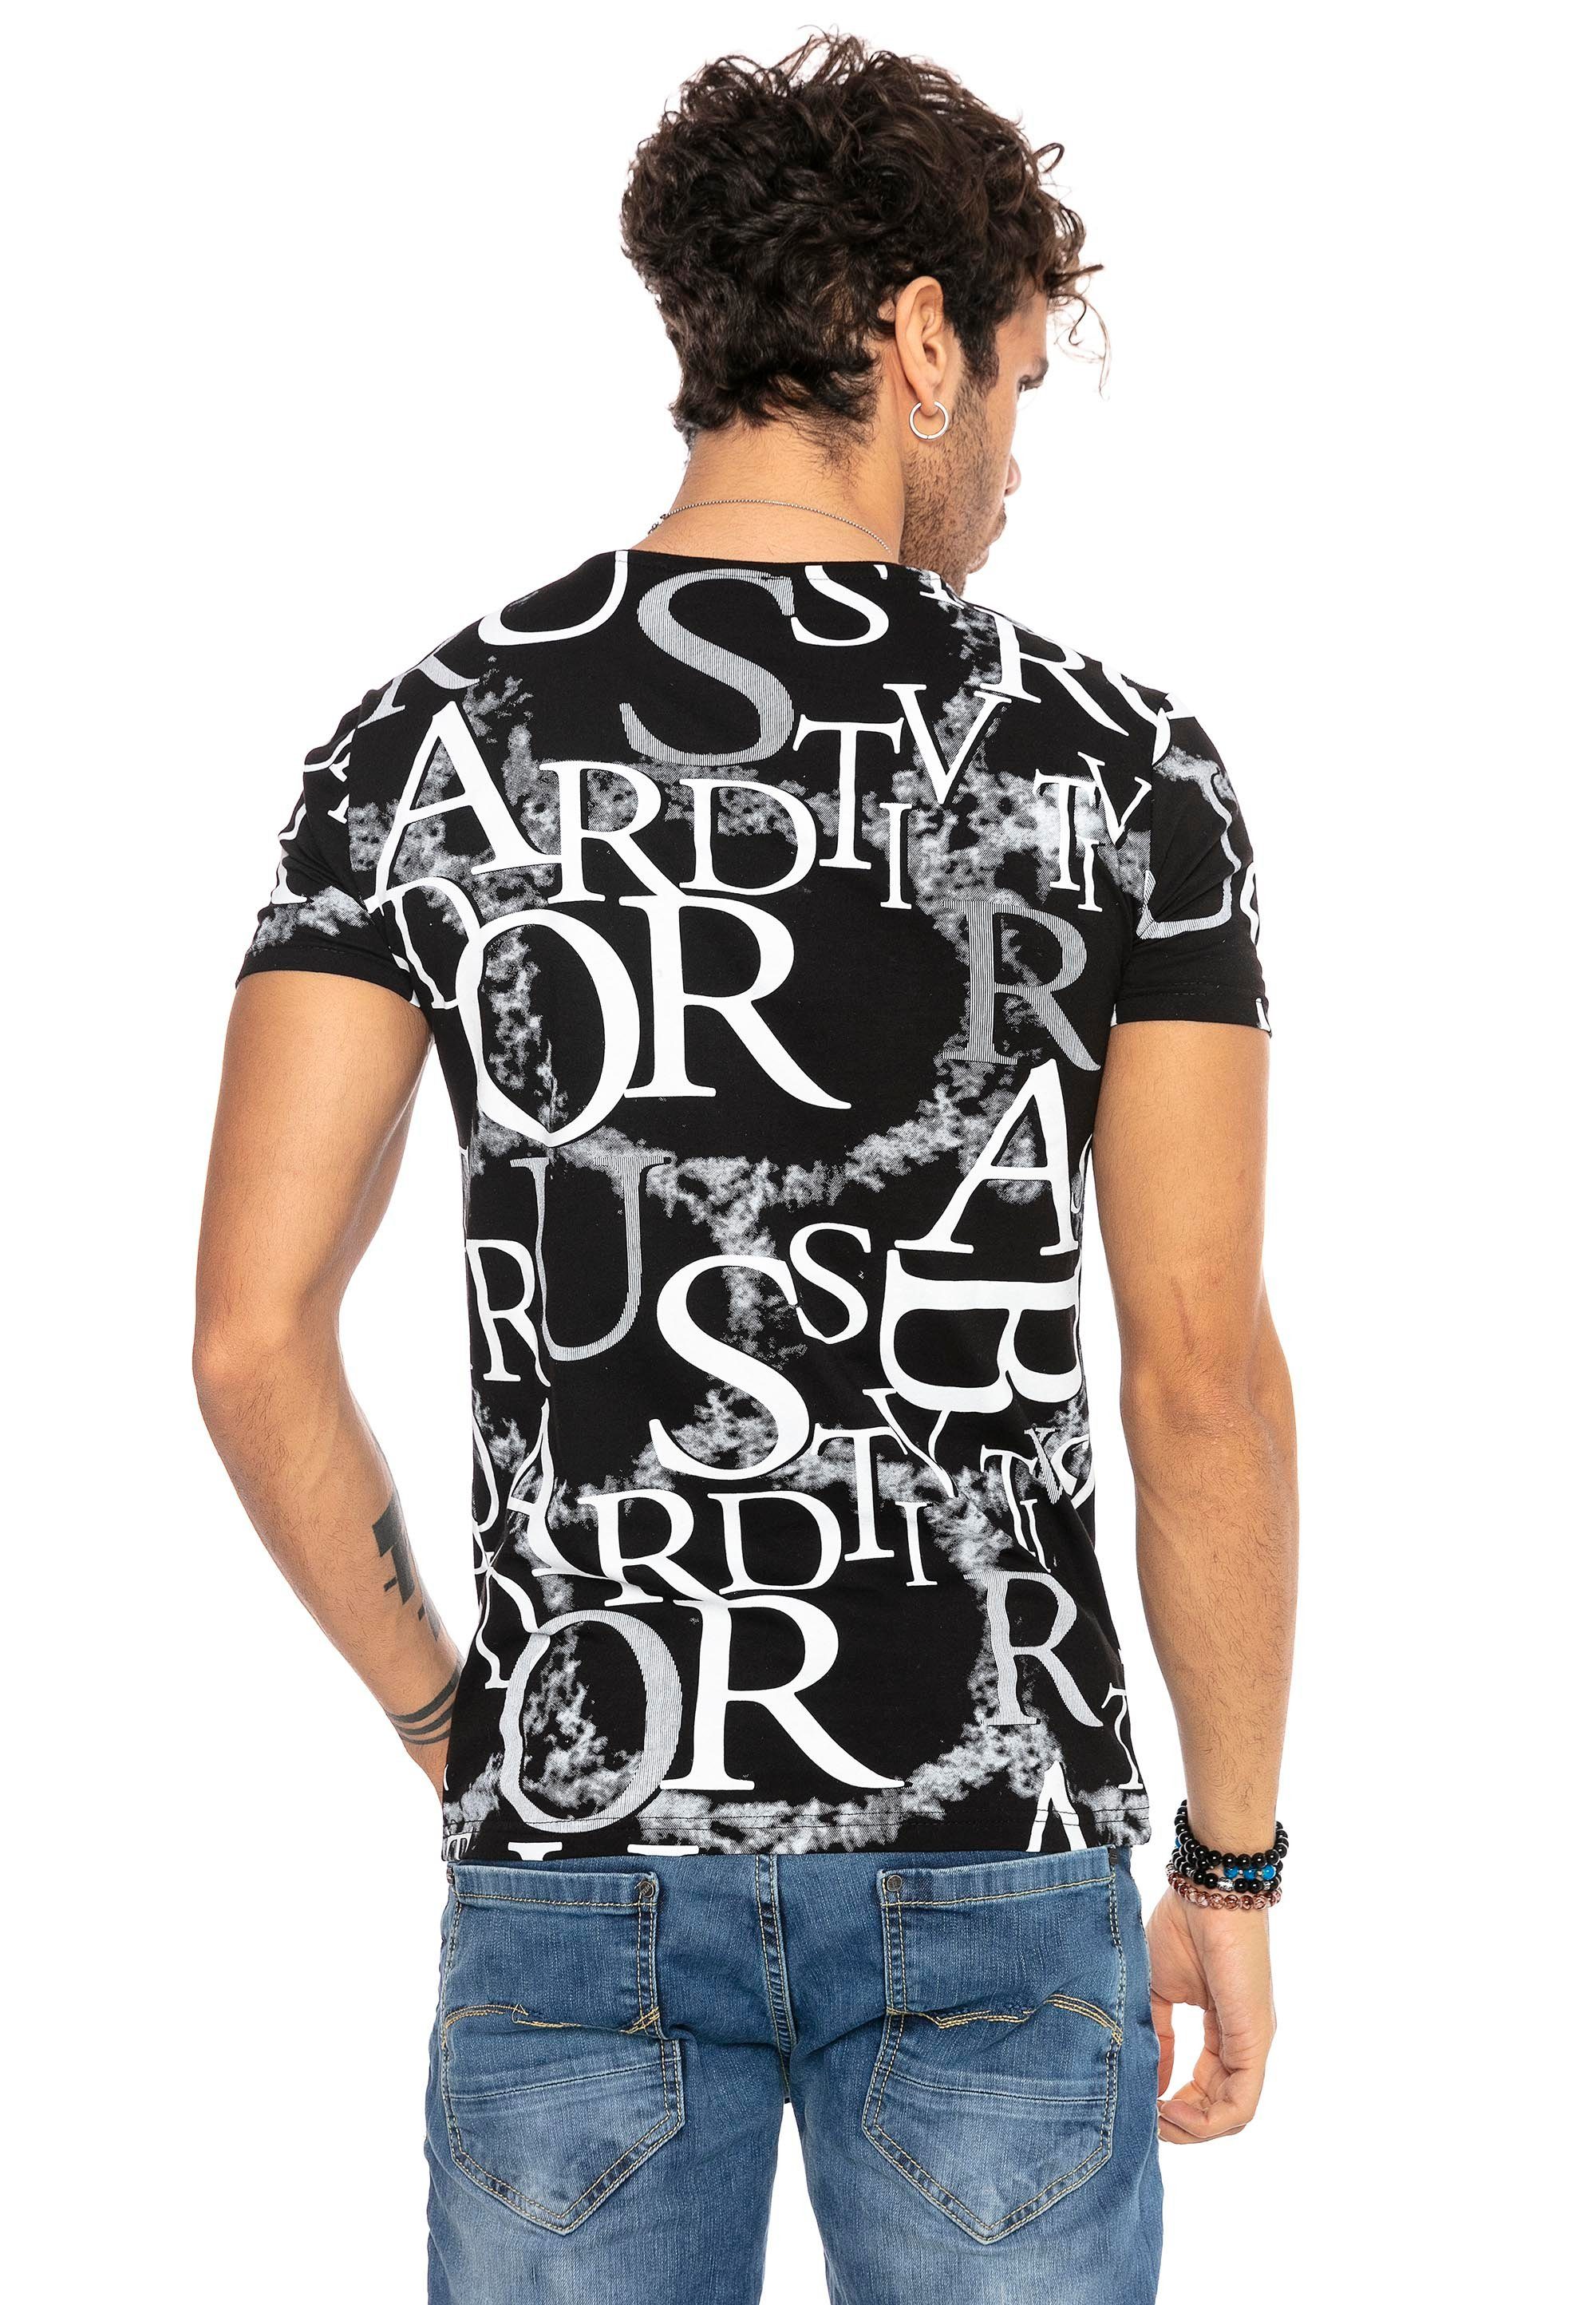 schwarz-weiß RedBridge mit ausgefallenem T-Shirt Allover-Print Heights Sterling